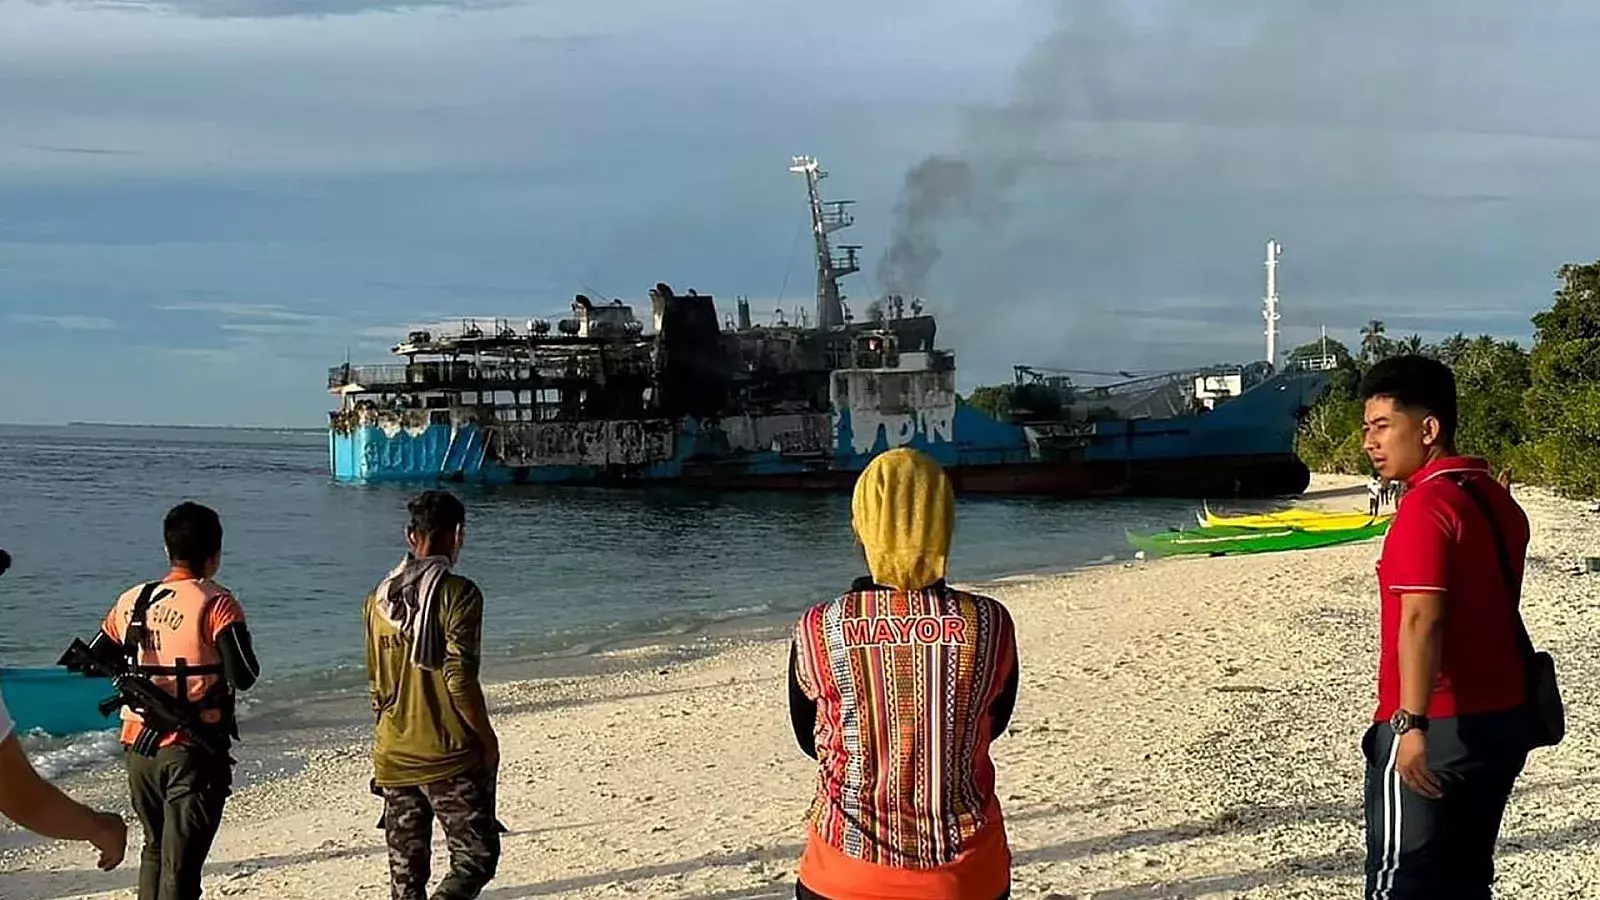 Al menos 31 muertos y 7 desaparecidos por incendio de ferry en Filipinas